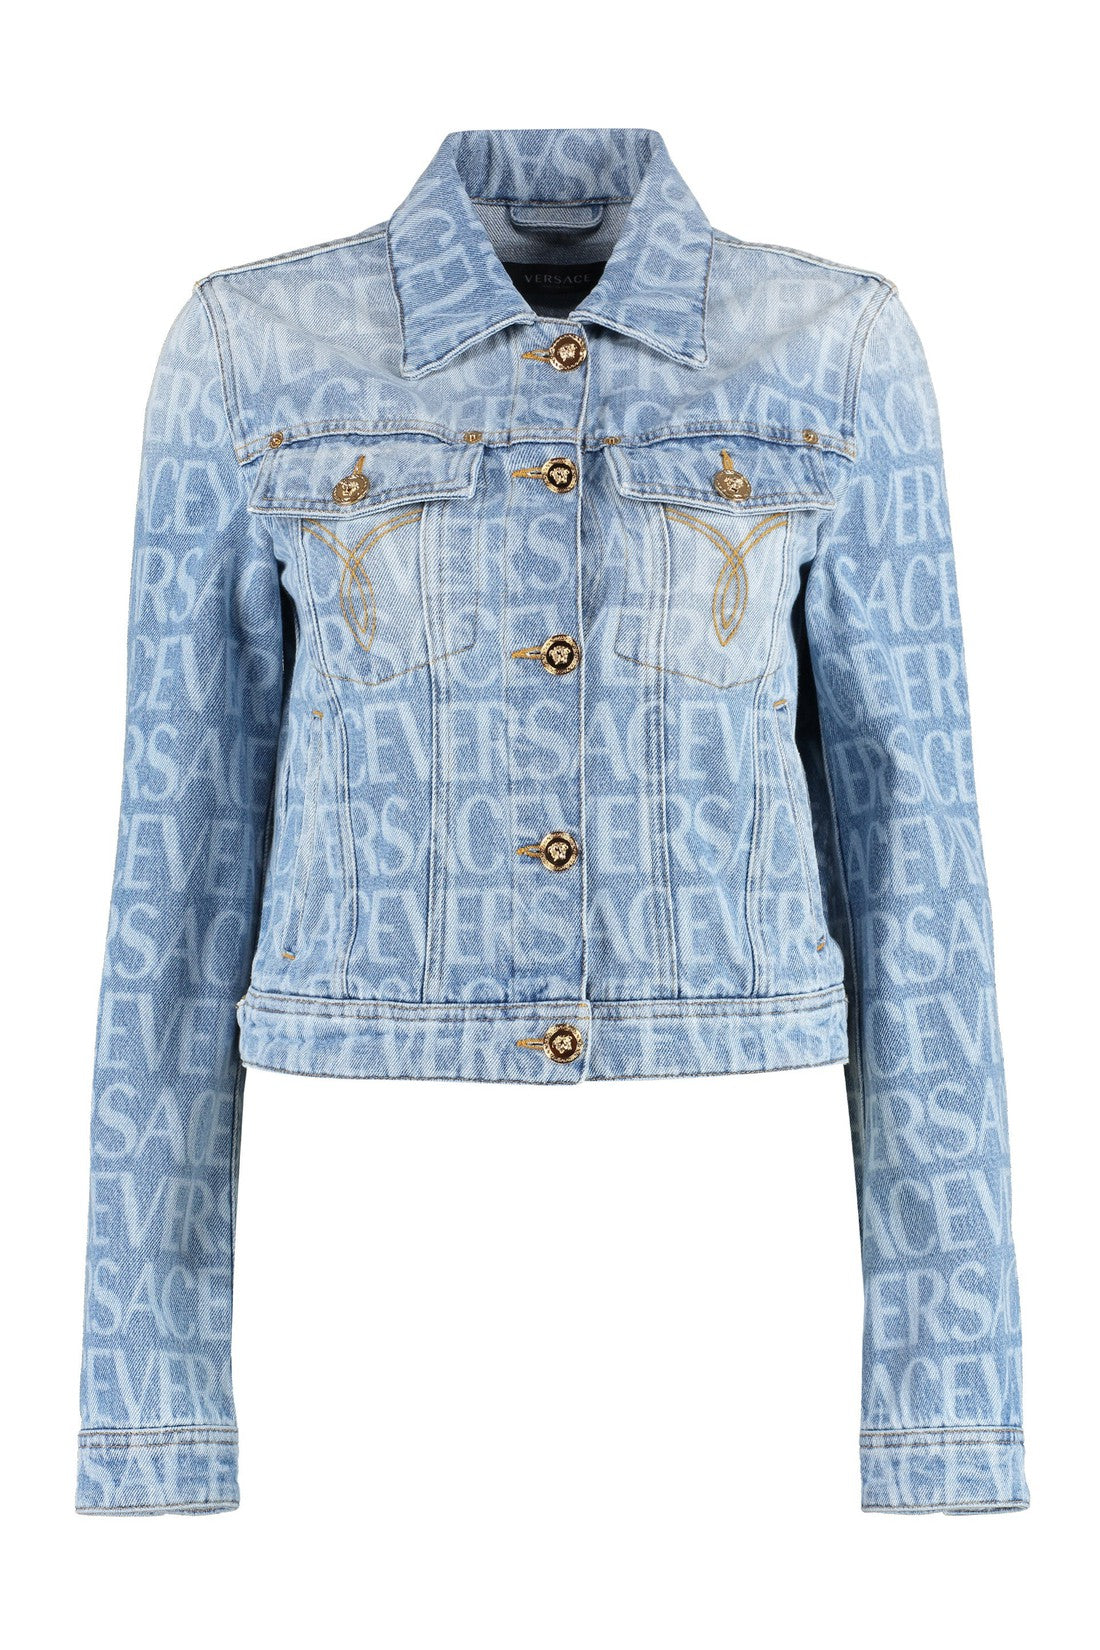 Versace-OUTLET-SALE-Denim jacket-ARCHIVIST